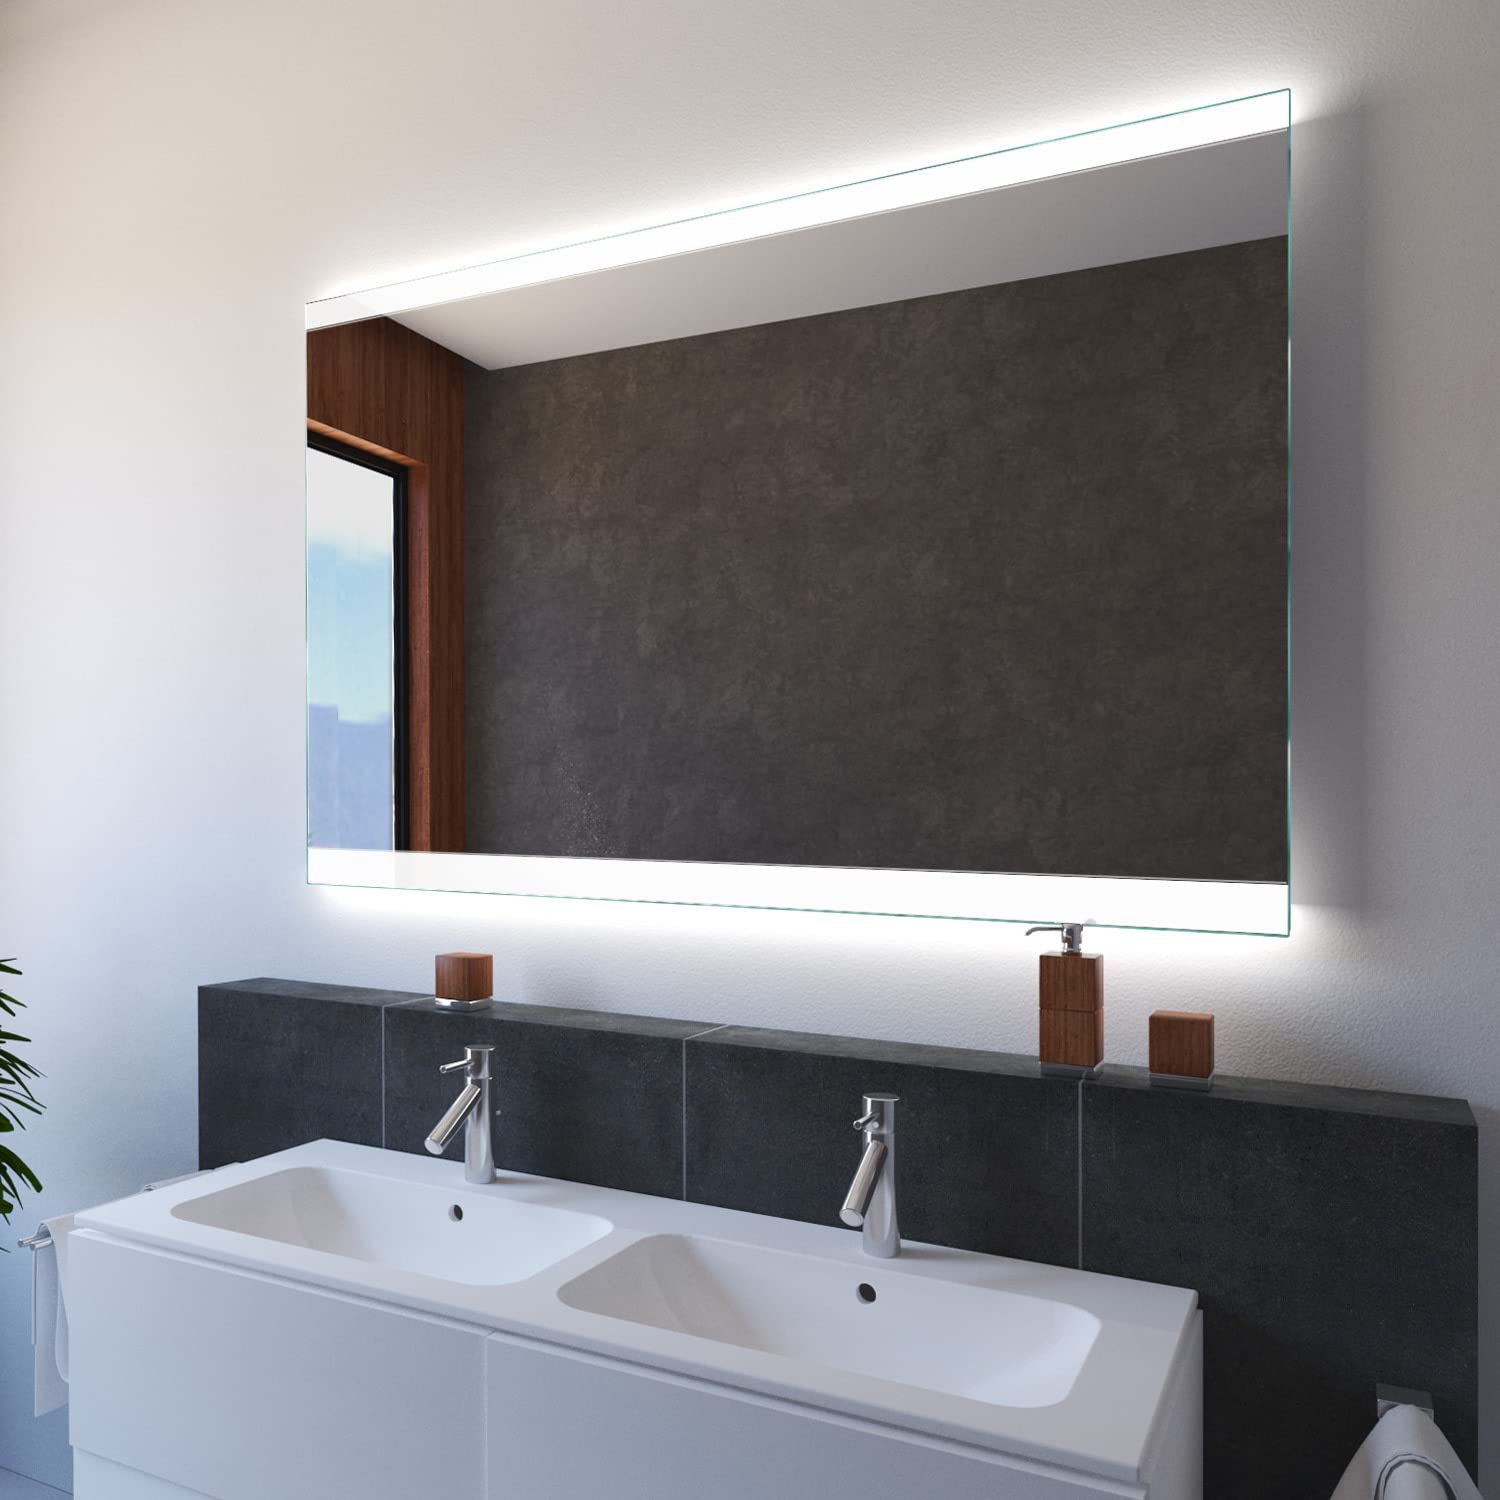 SARAR Wandspiegel mit LED-Beleuchtung 140x70cm Made in Germany Designo MA2510 Badspiegel Spiegel mit Beleuchtung Badezimmerspiegel nach-auf Maß